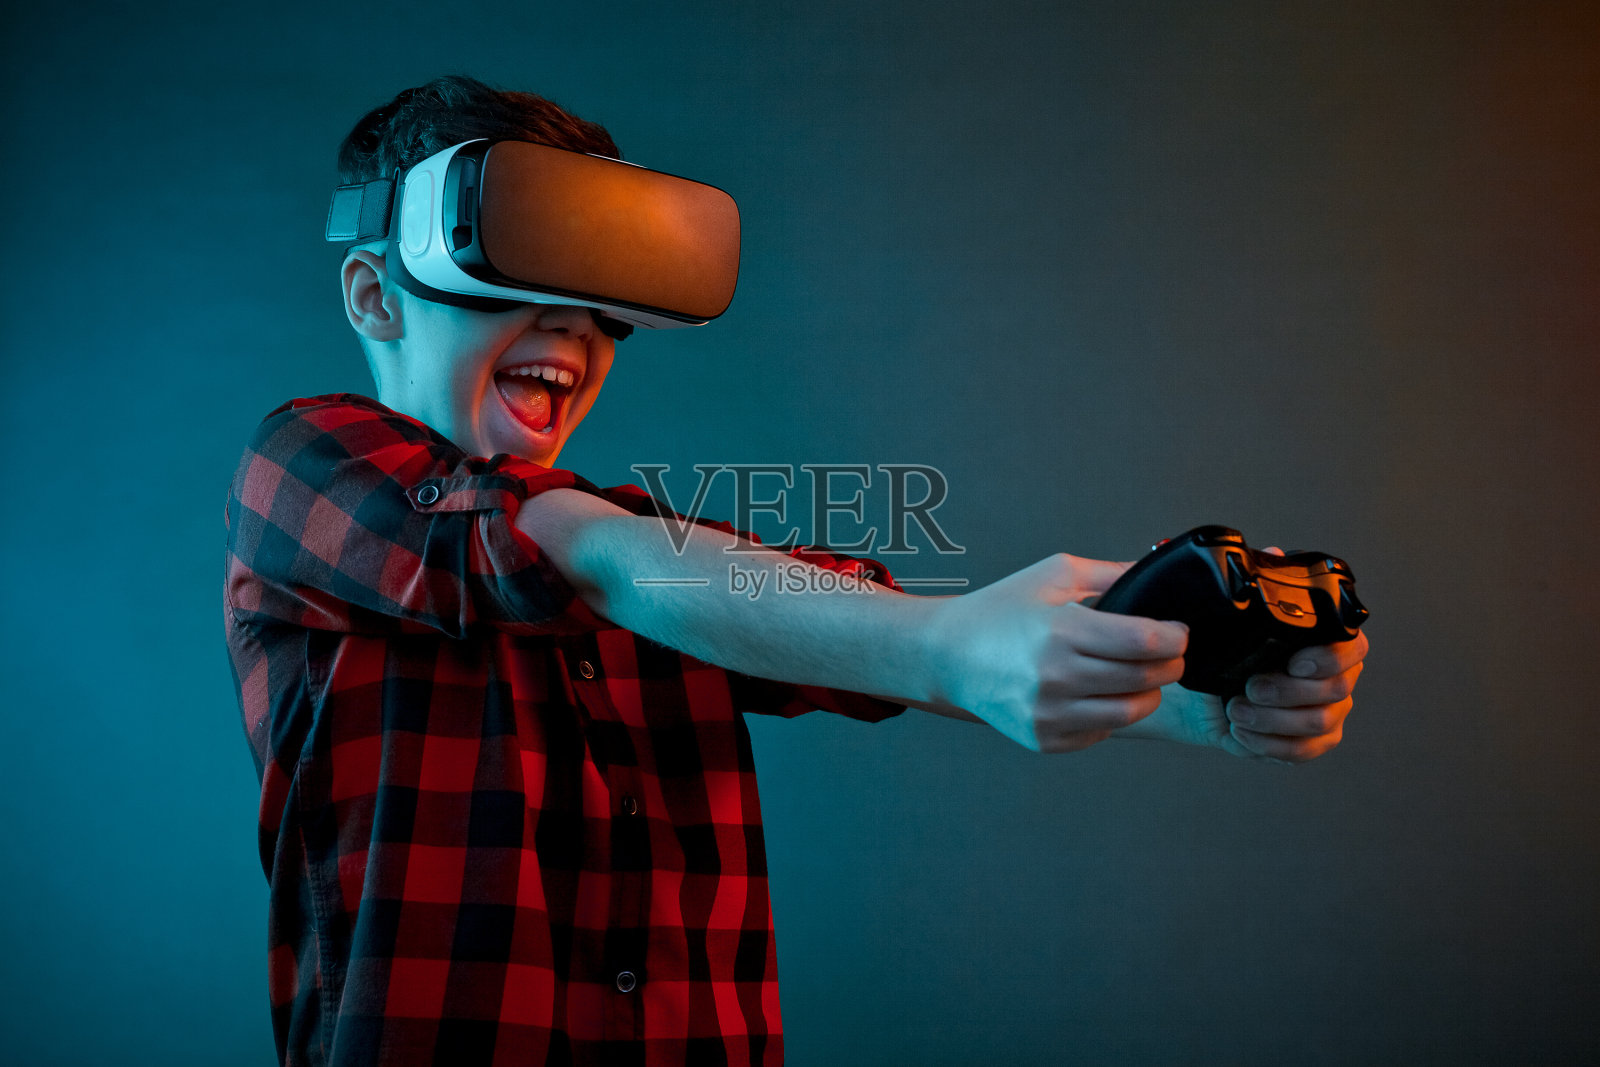 兴奋的男孩用VR眼镜玩游戏手柄照片摄影图片